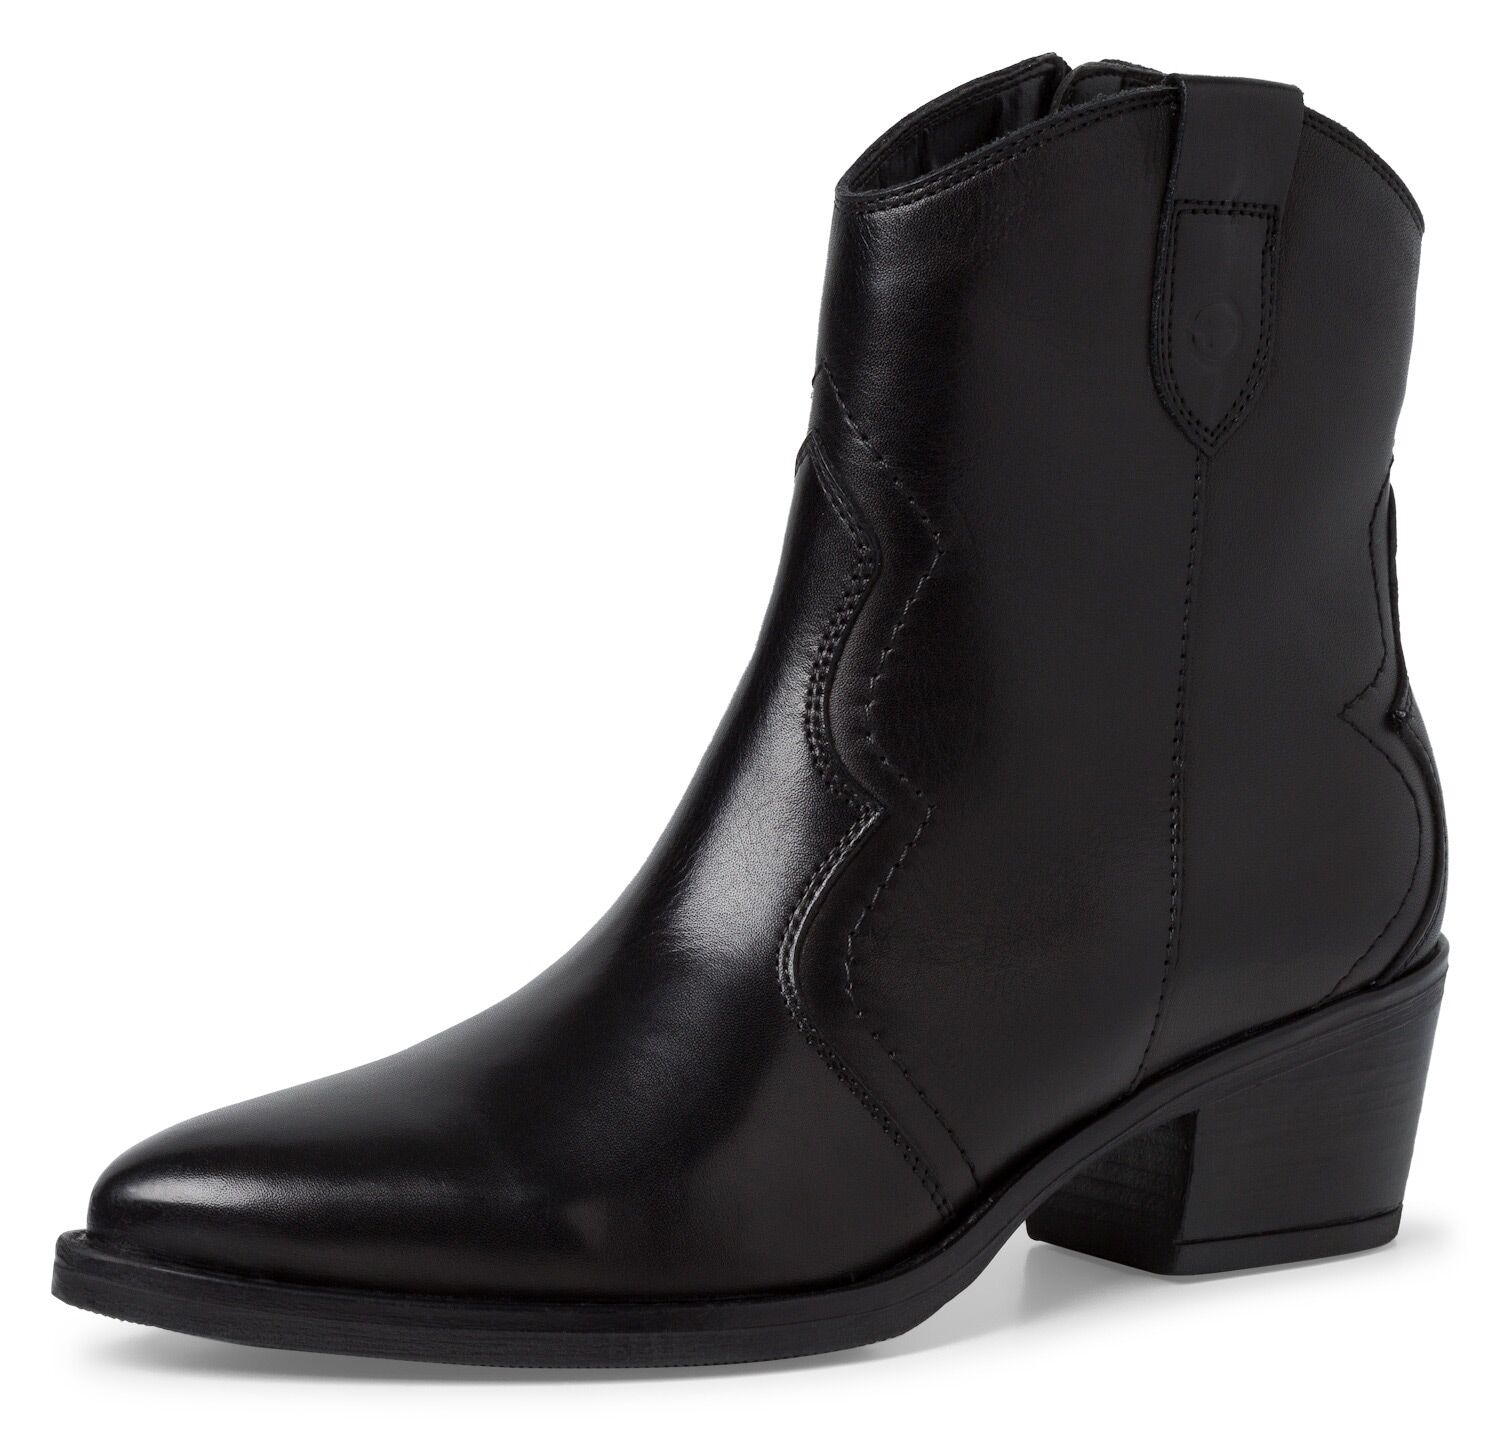 Cowboy Stiefelette TAMARIS Gr. 36, schwarz Damen Schuhe Cowboy-Stiefelette Stiefelette Cowboyboots Reißverschlussstiefeletten in spitzer Form